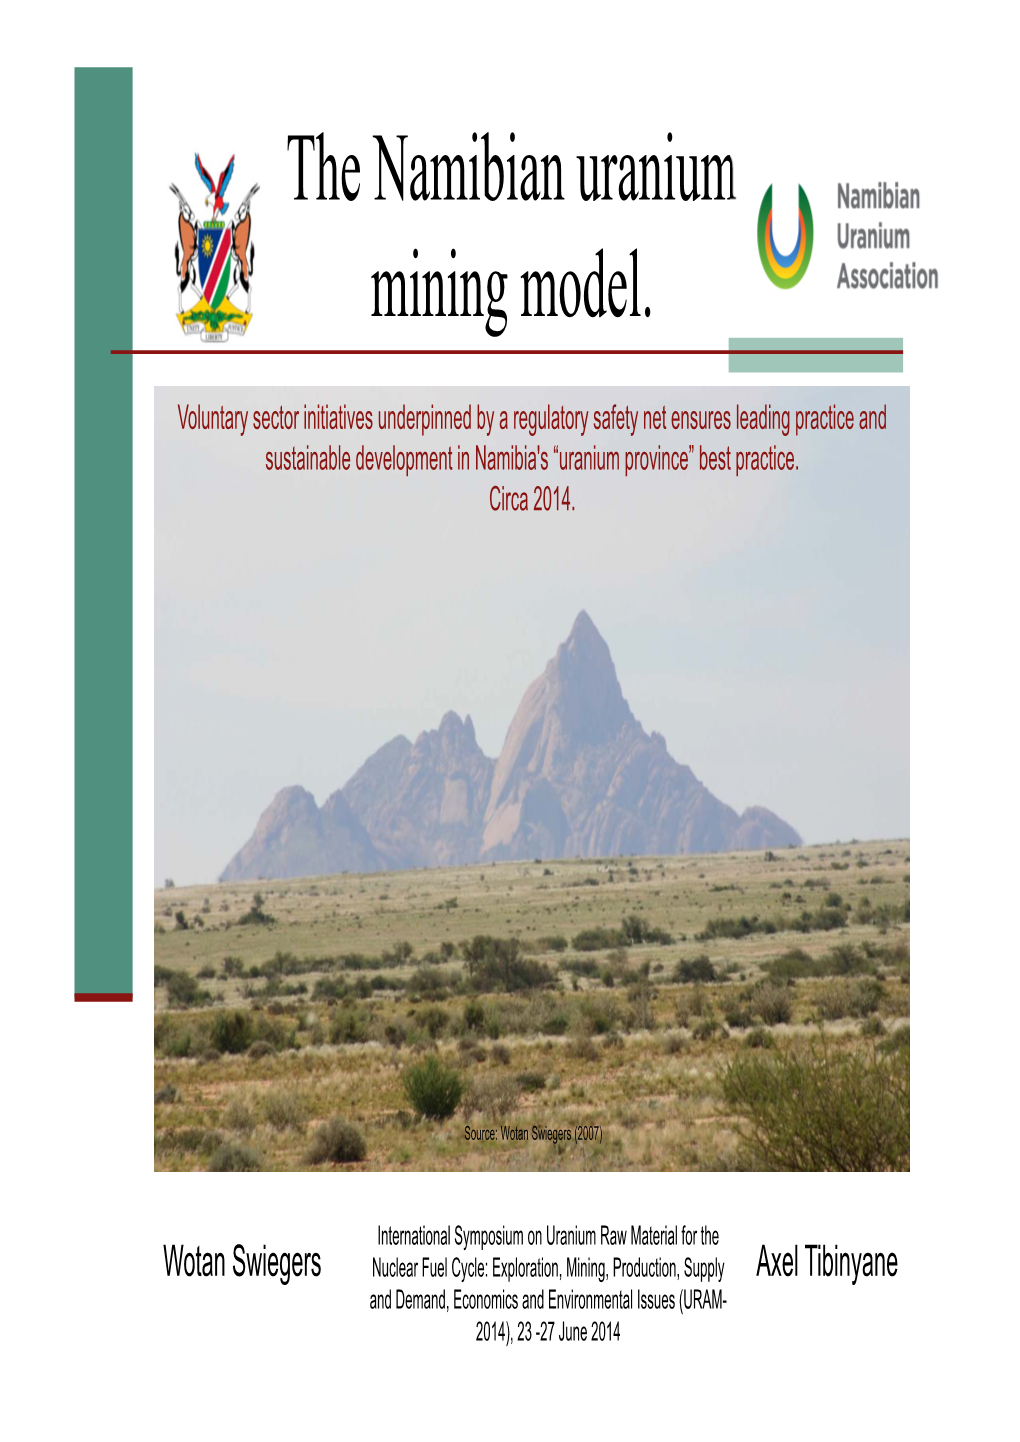 The Namibian Uranium Mining Model